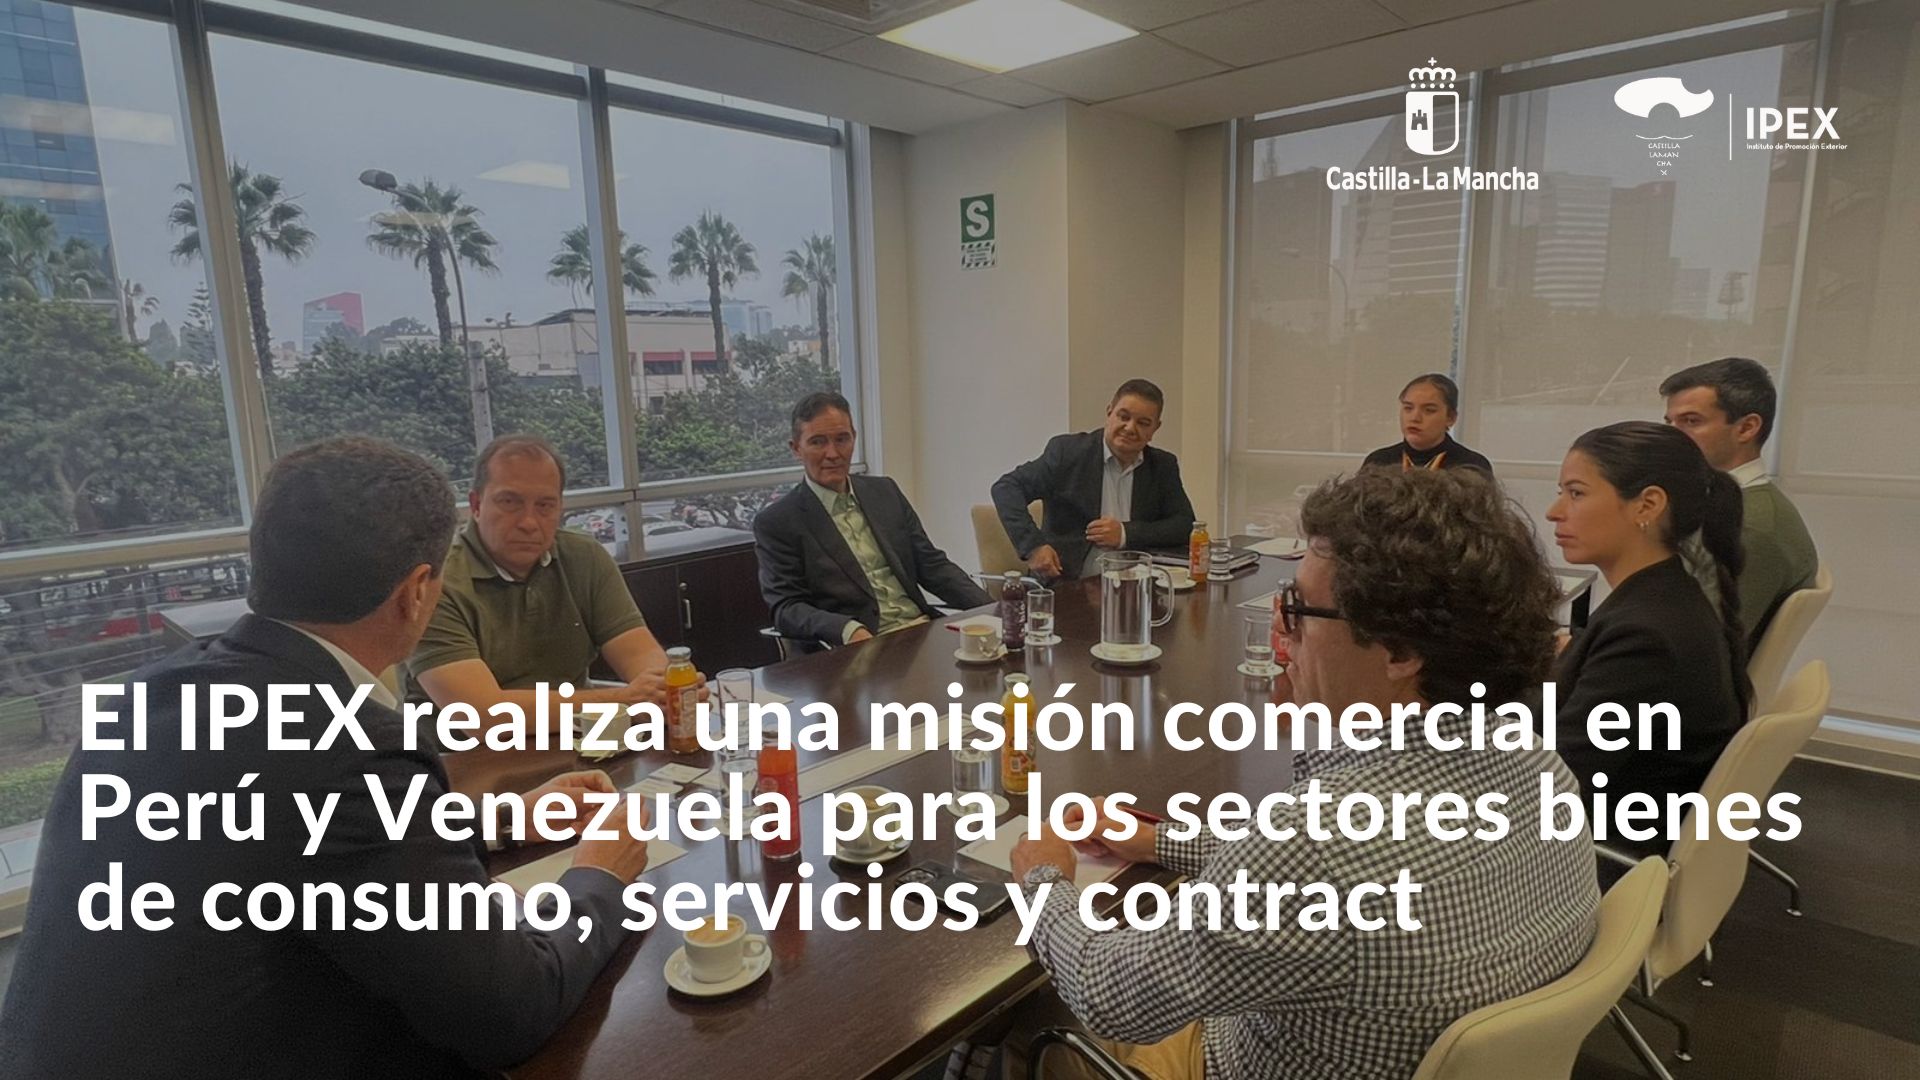 El IPEX realiza una misión comercial en Perú y Venezuela para los sectores bienes de consumo, servicios y contract